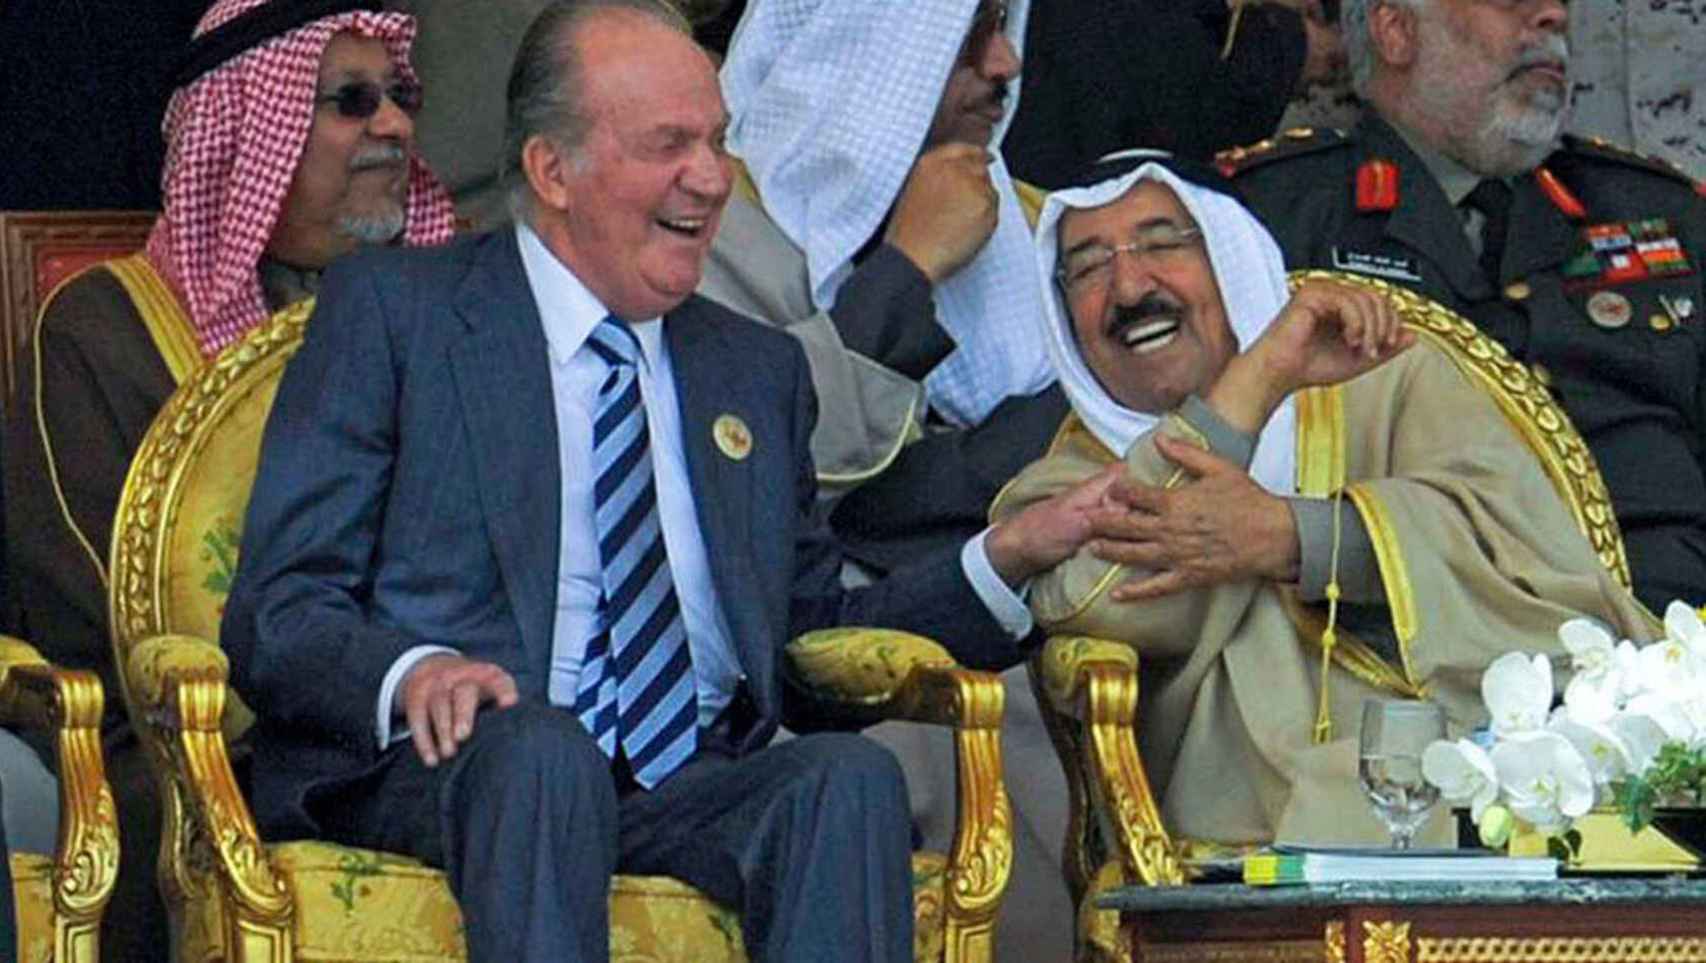 El rey emérito con Juan Carlos I y el rey saudí Abdalá bin Abdulaziz en una imagen de archivo.